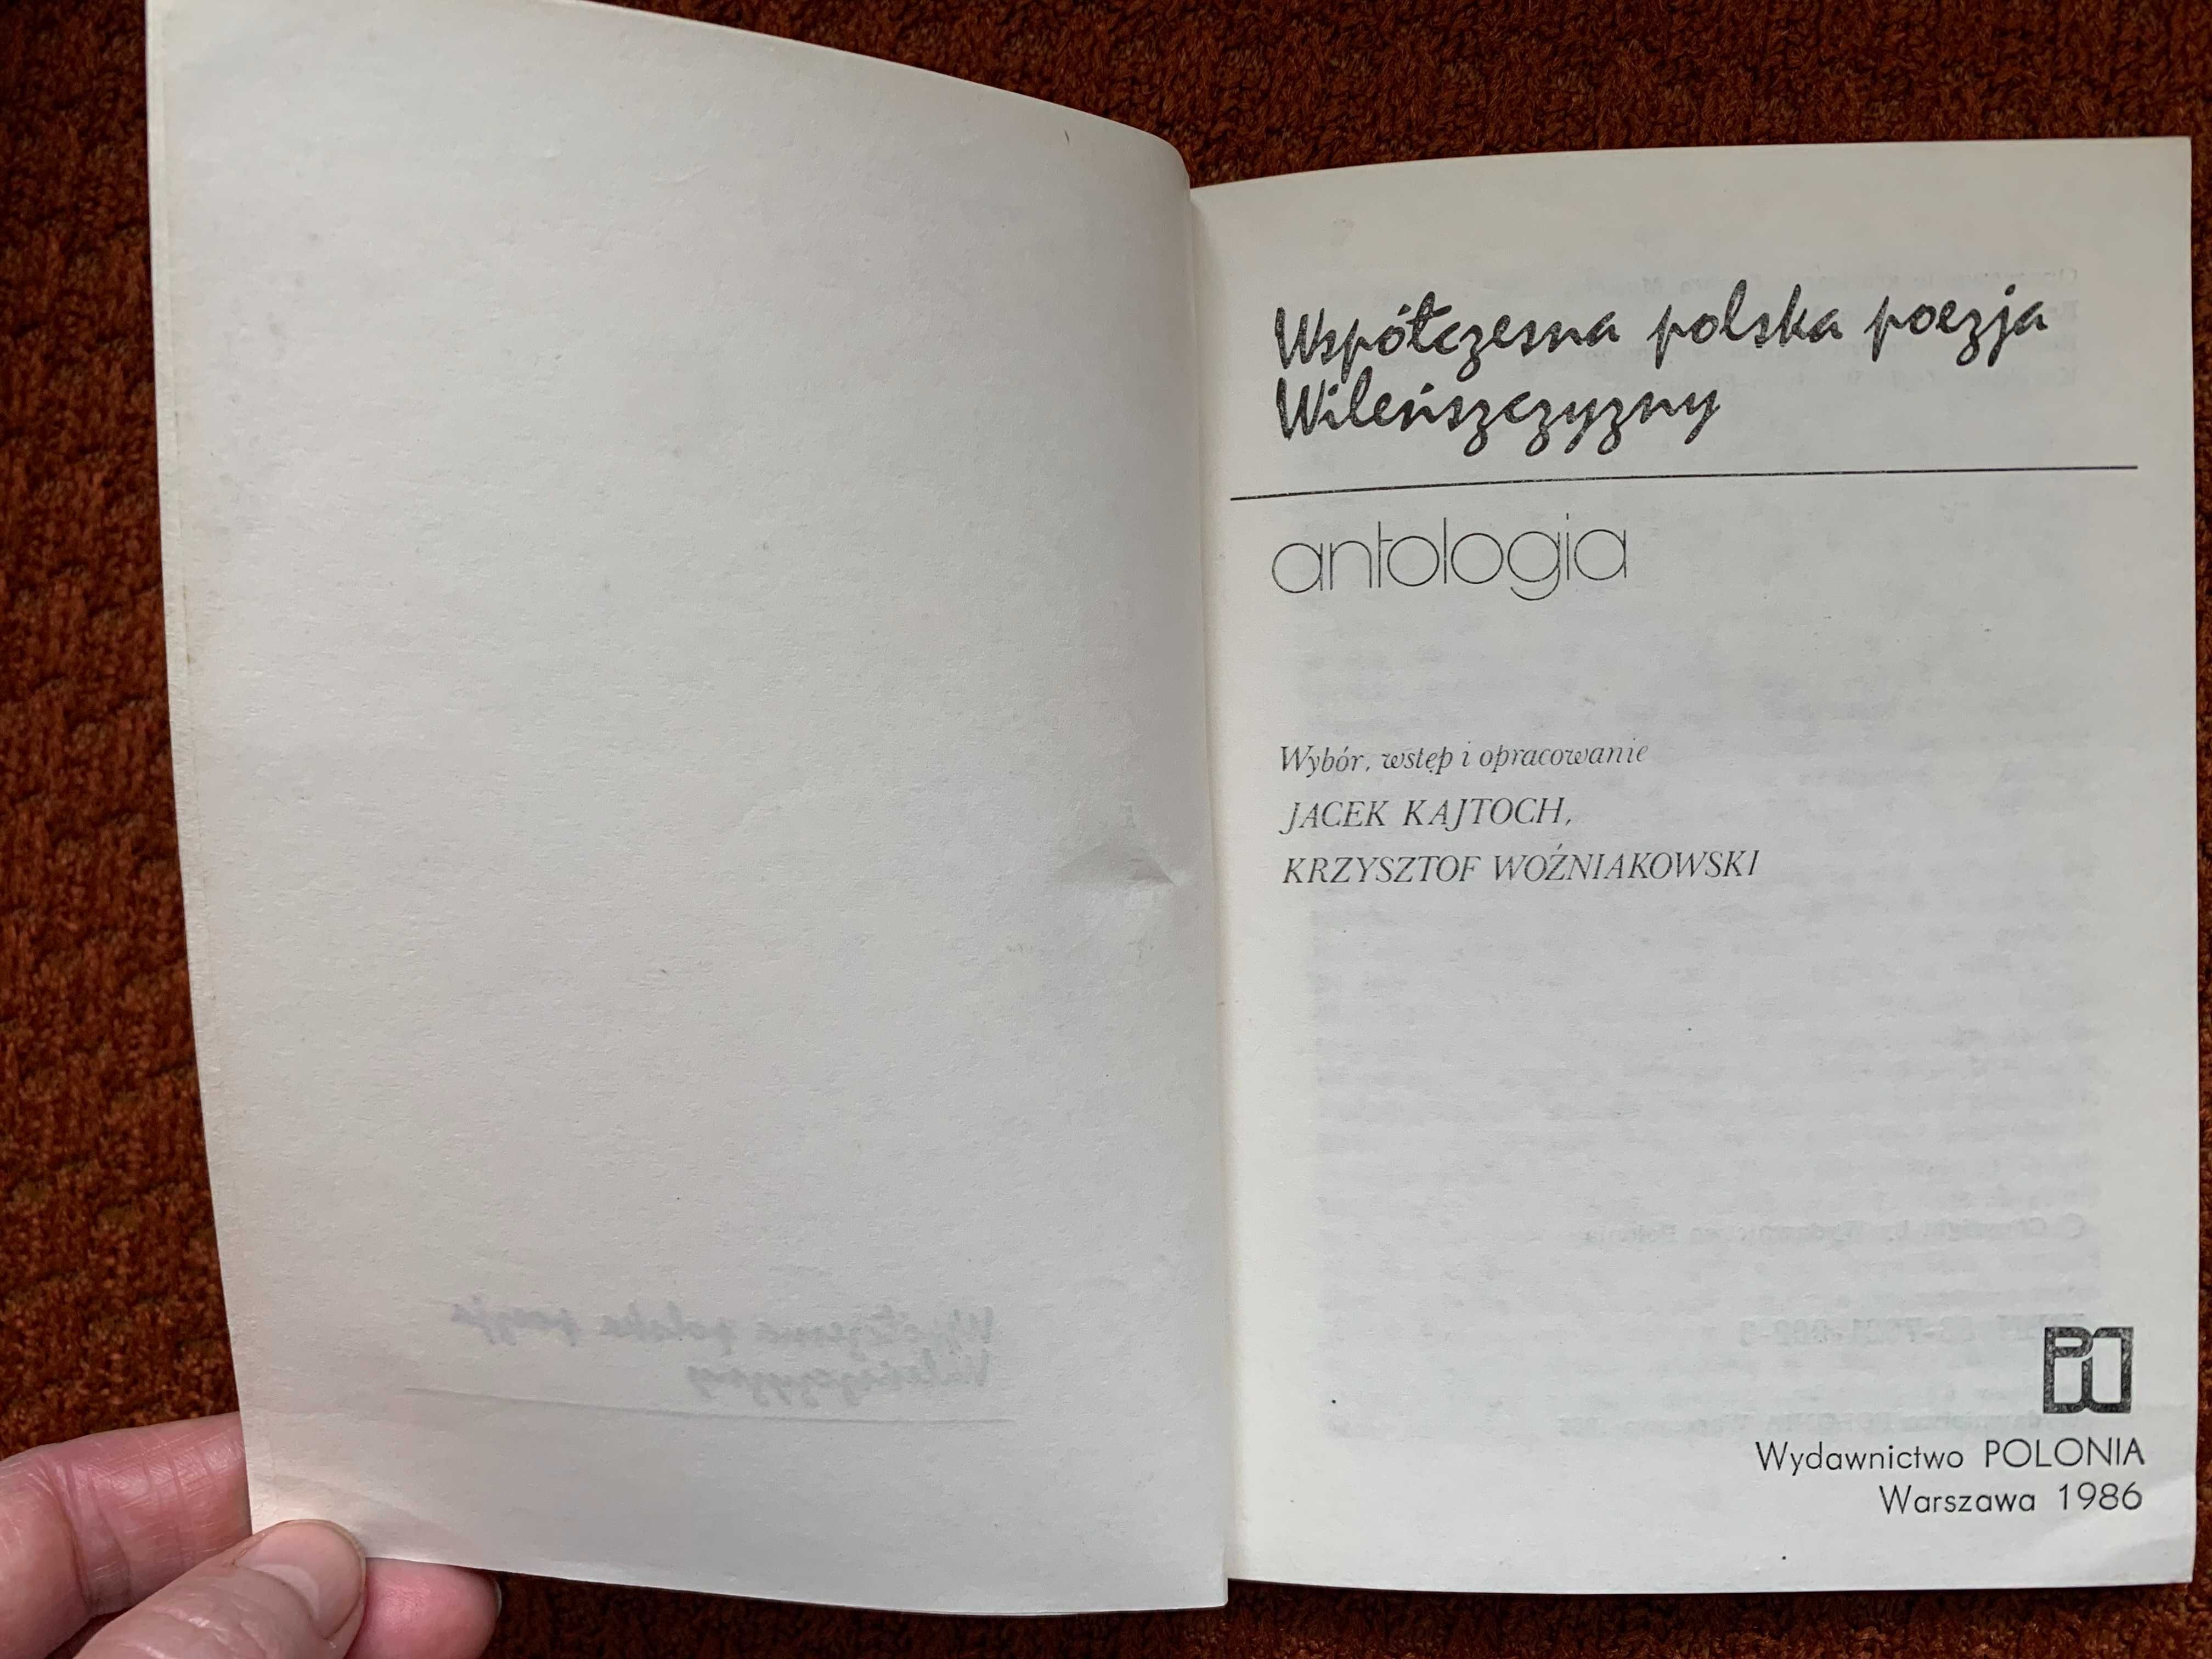 Współczesna polska poezja Wileńszczyzny - antologia